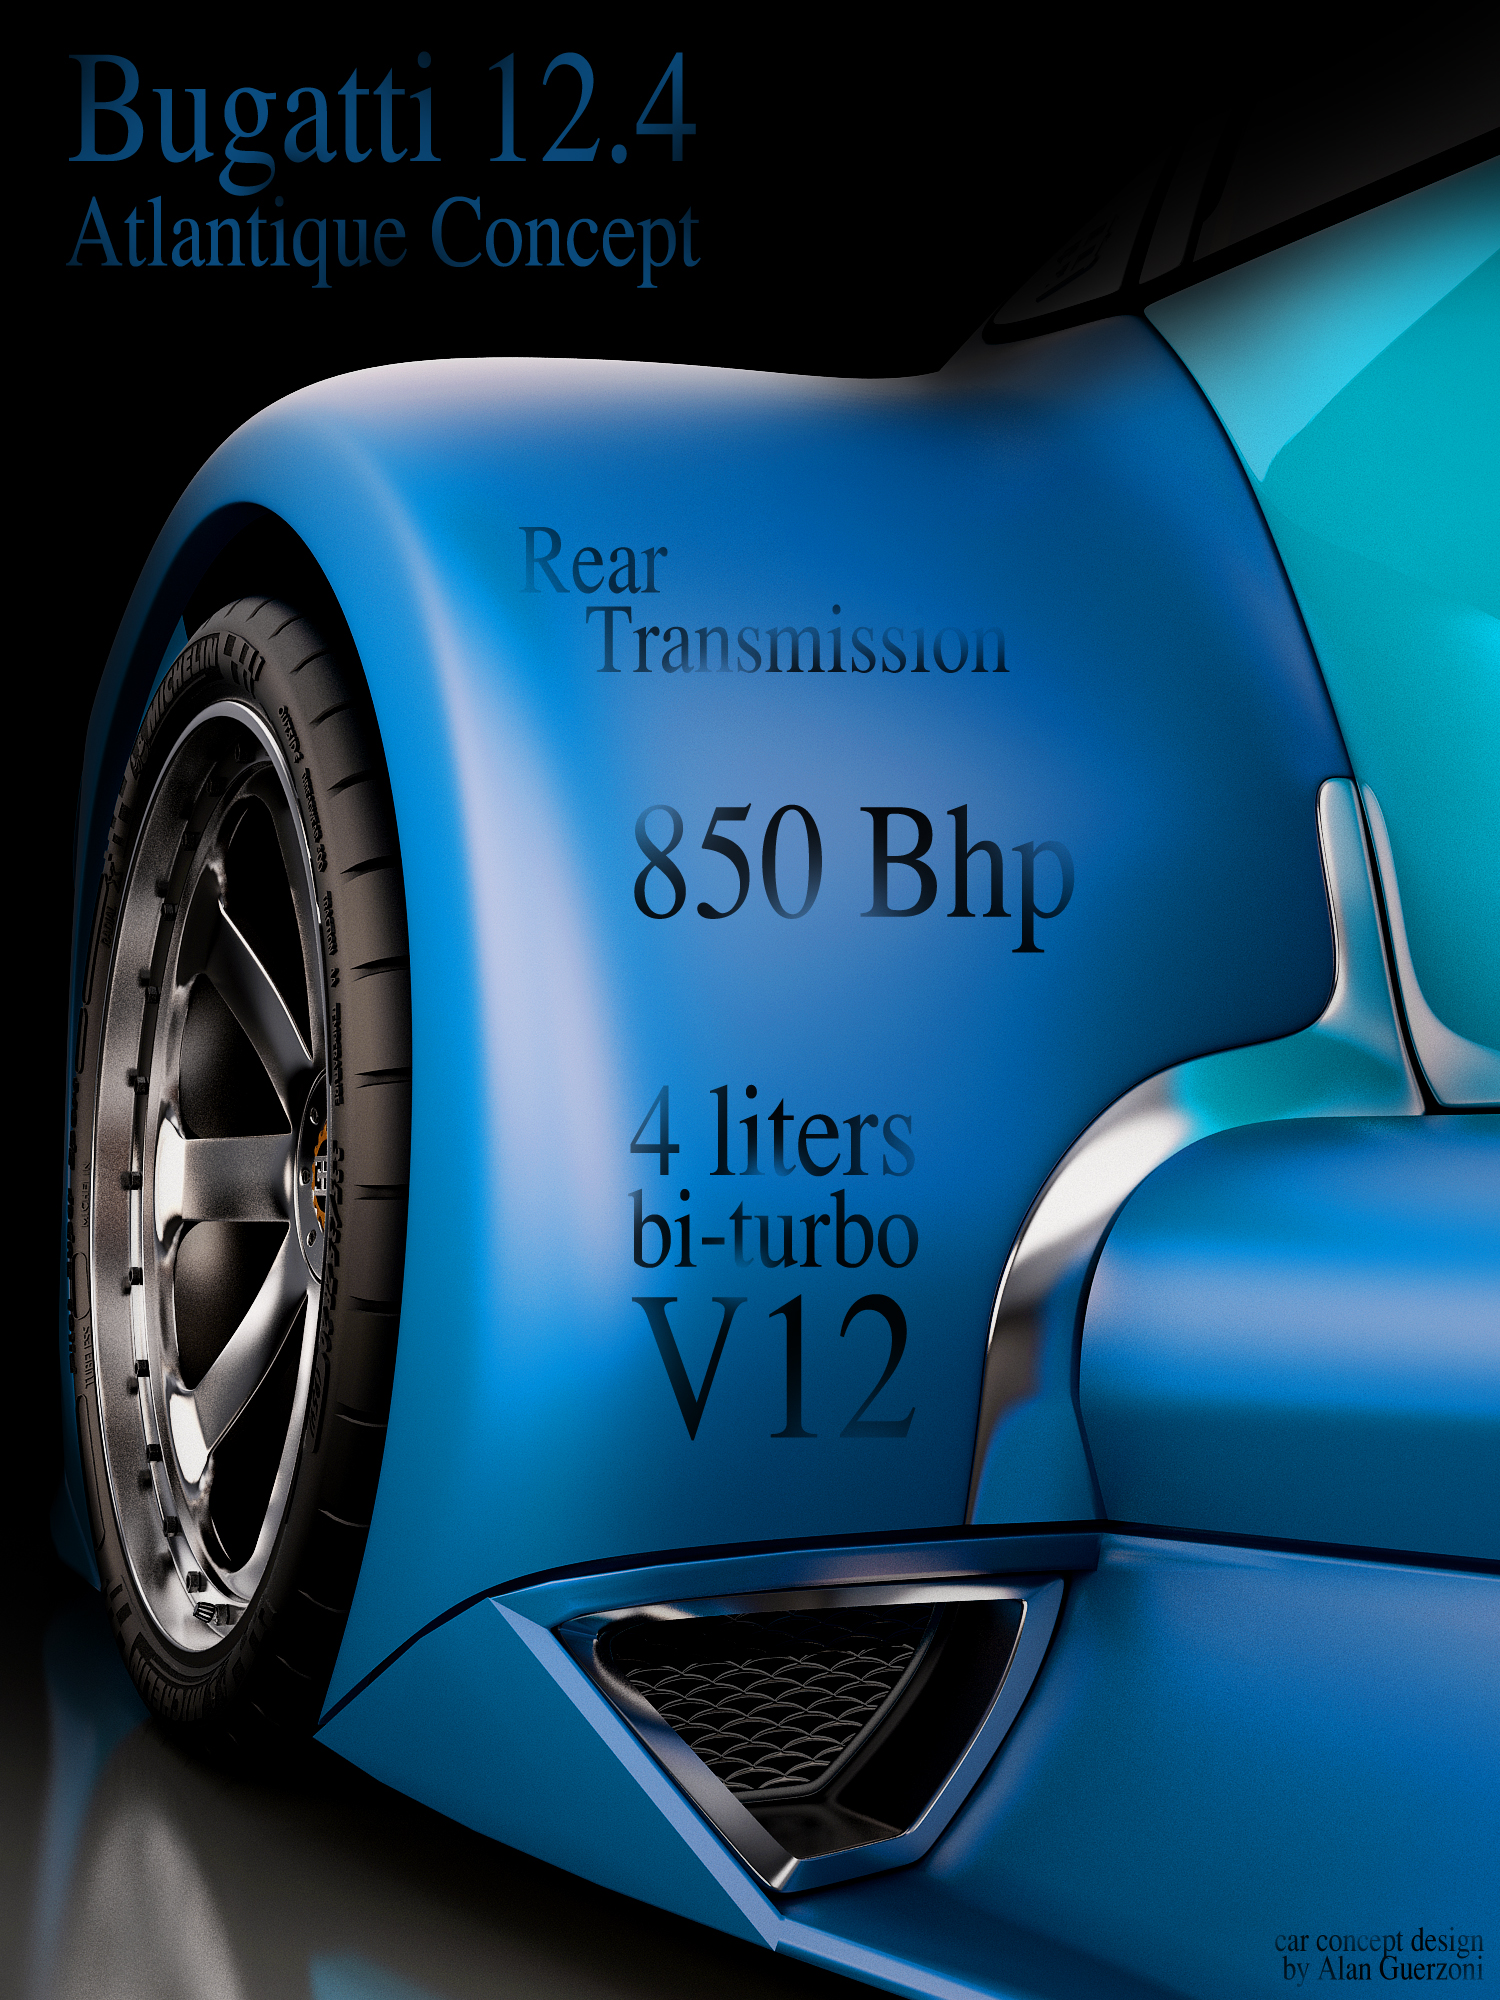 Bugatti 12.4 Atlantique. Bugatti Atlantique Concept. Bugatti Concept. Bugatti 12